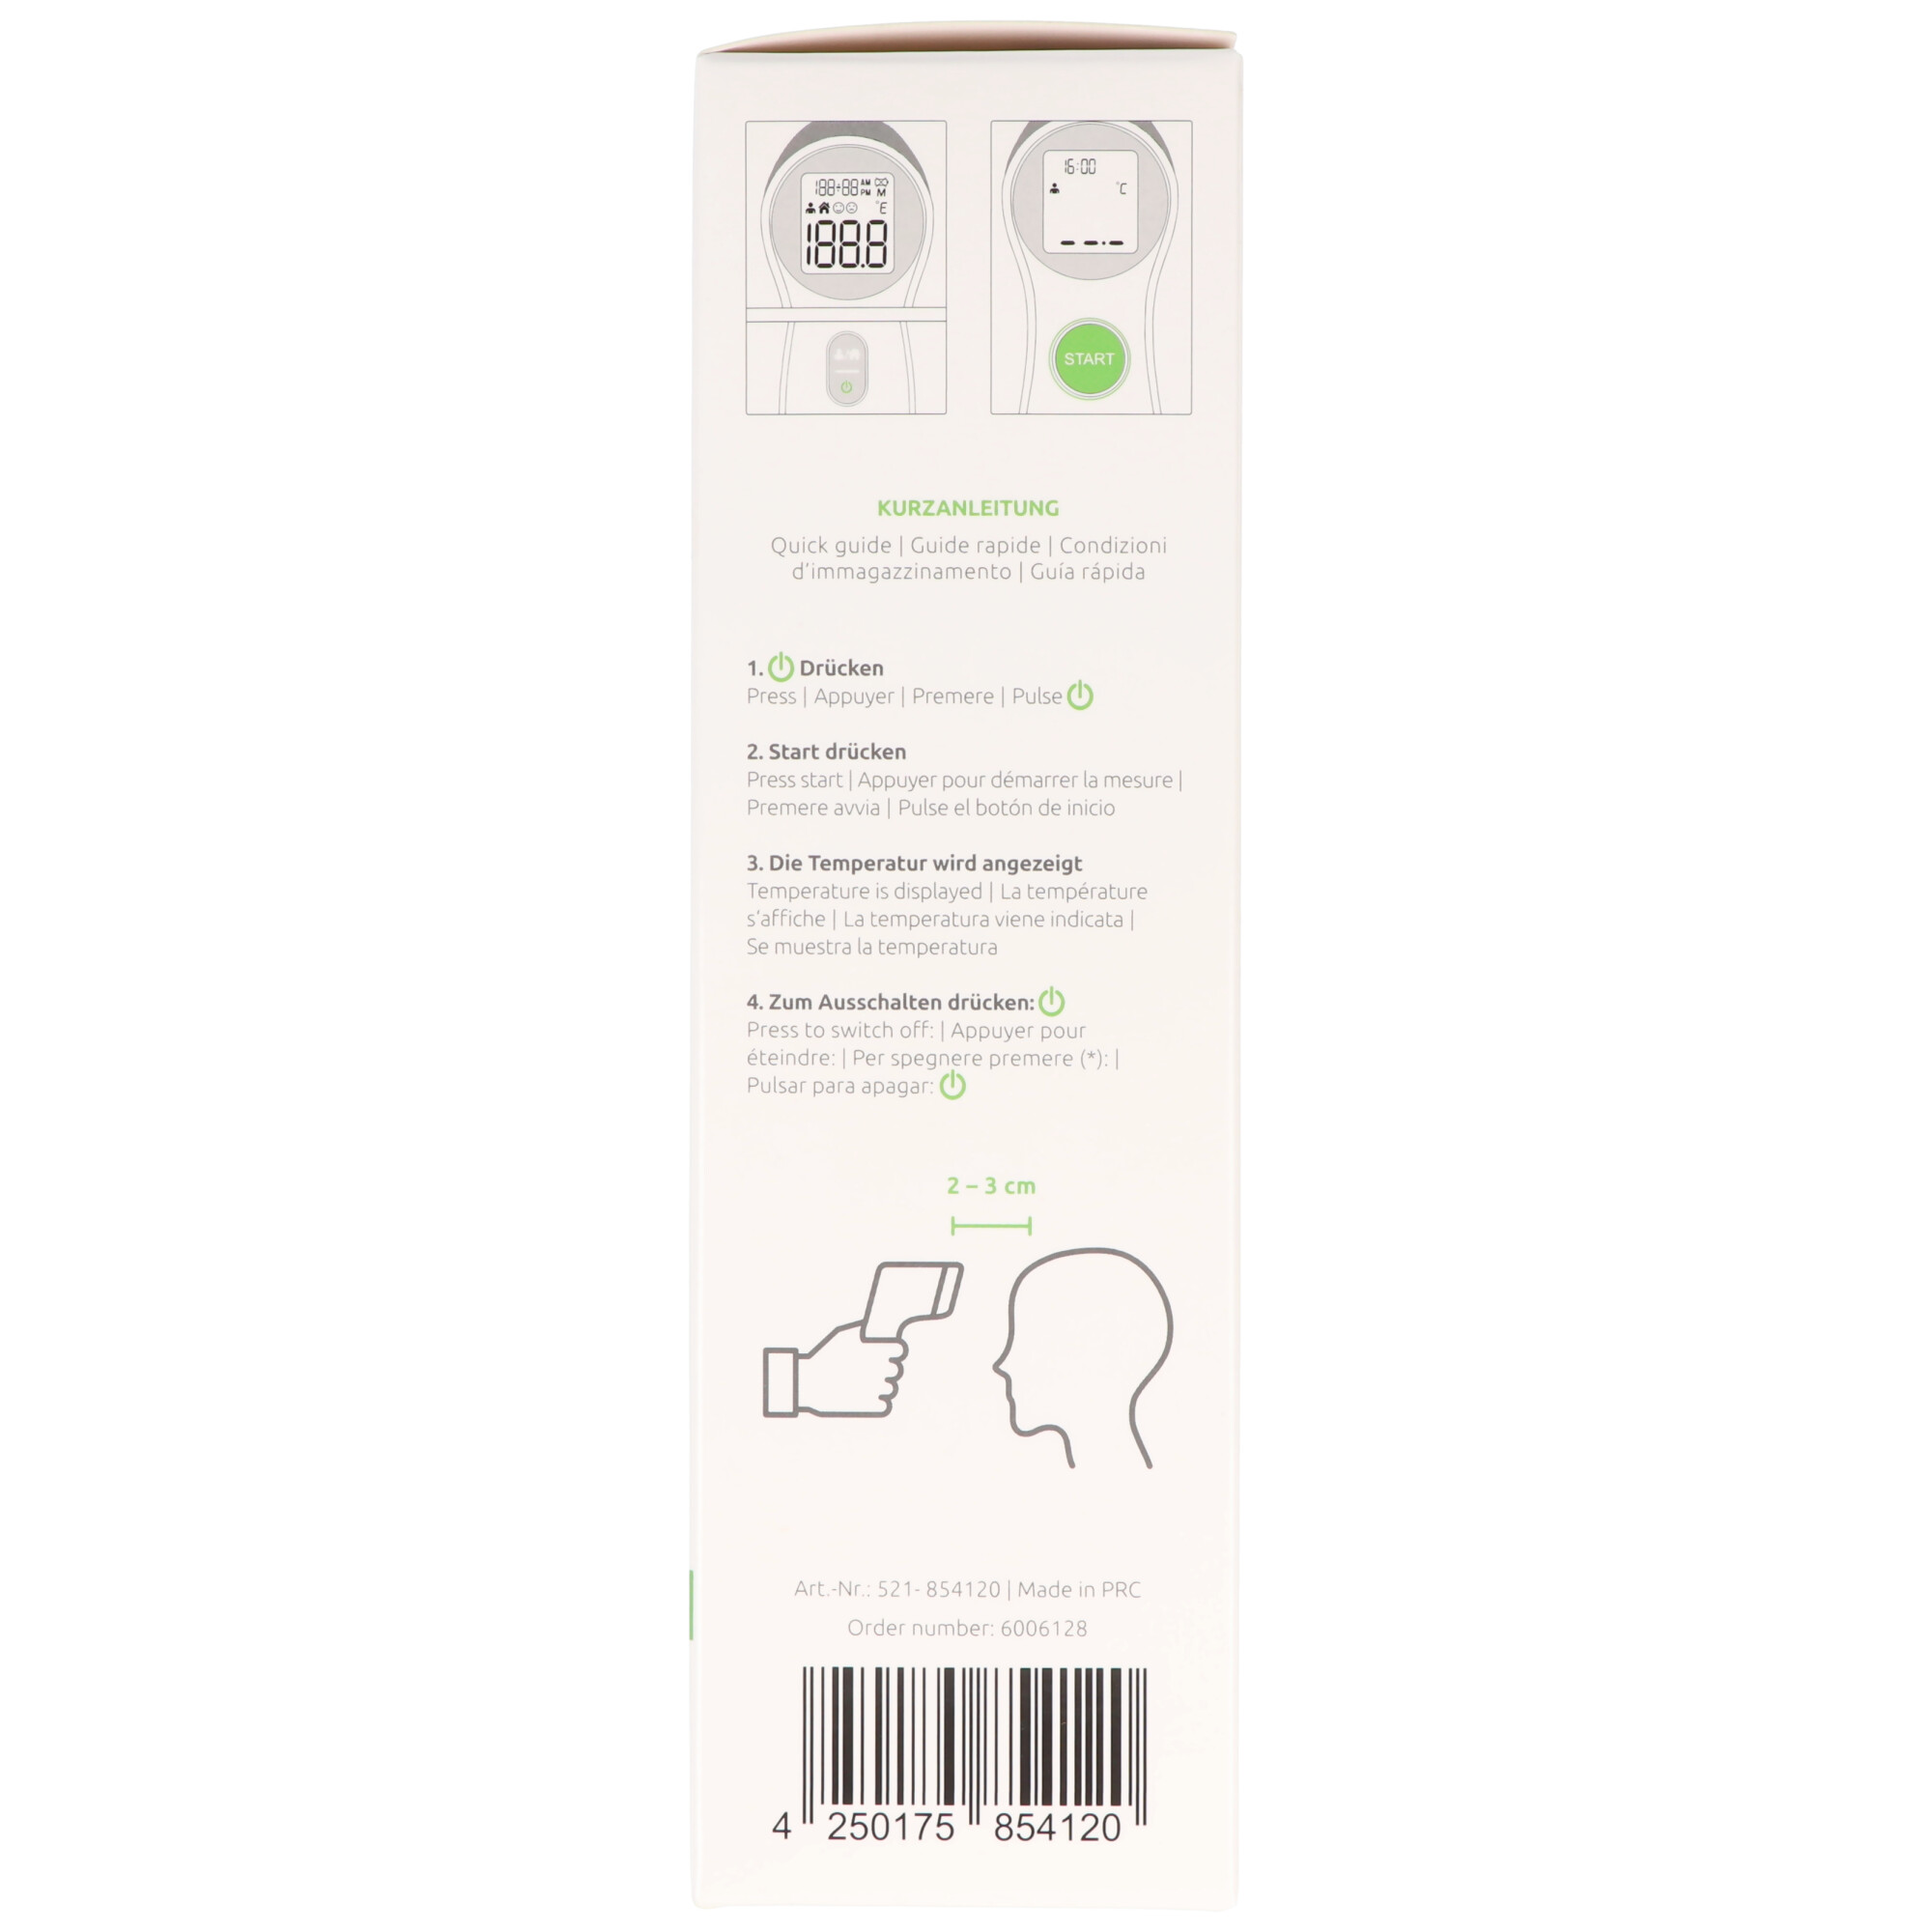 Dr. Senst® Infrarot Stirn-Thermometer DET-306 kontaktlos & sicher